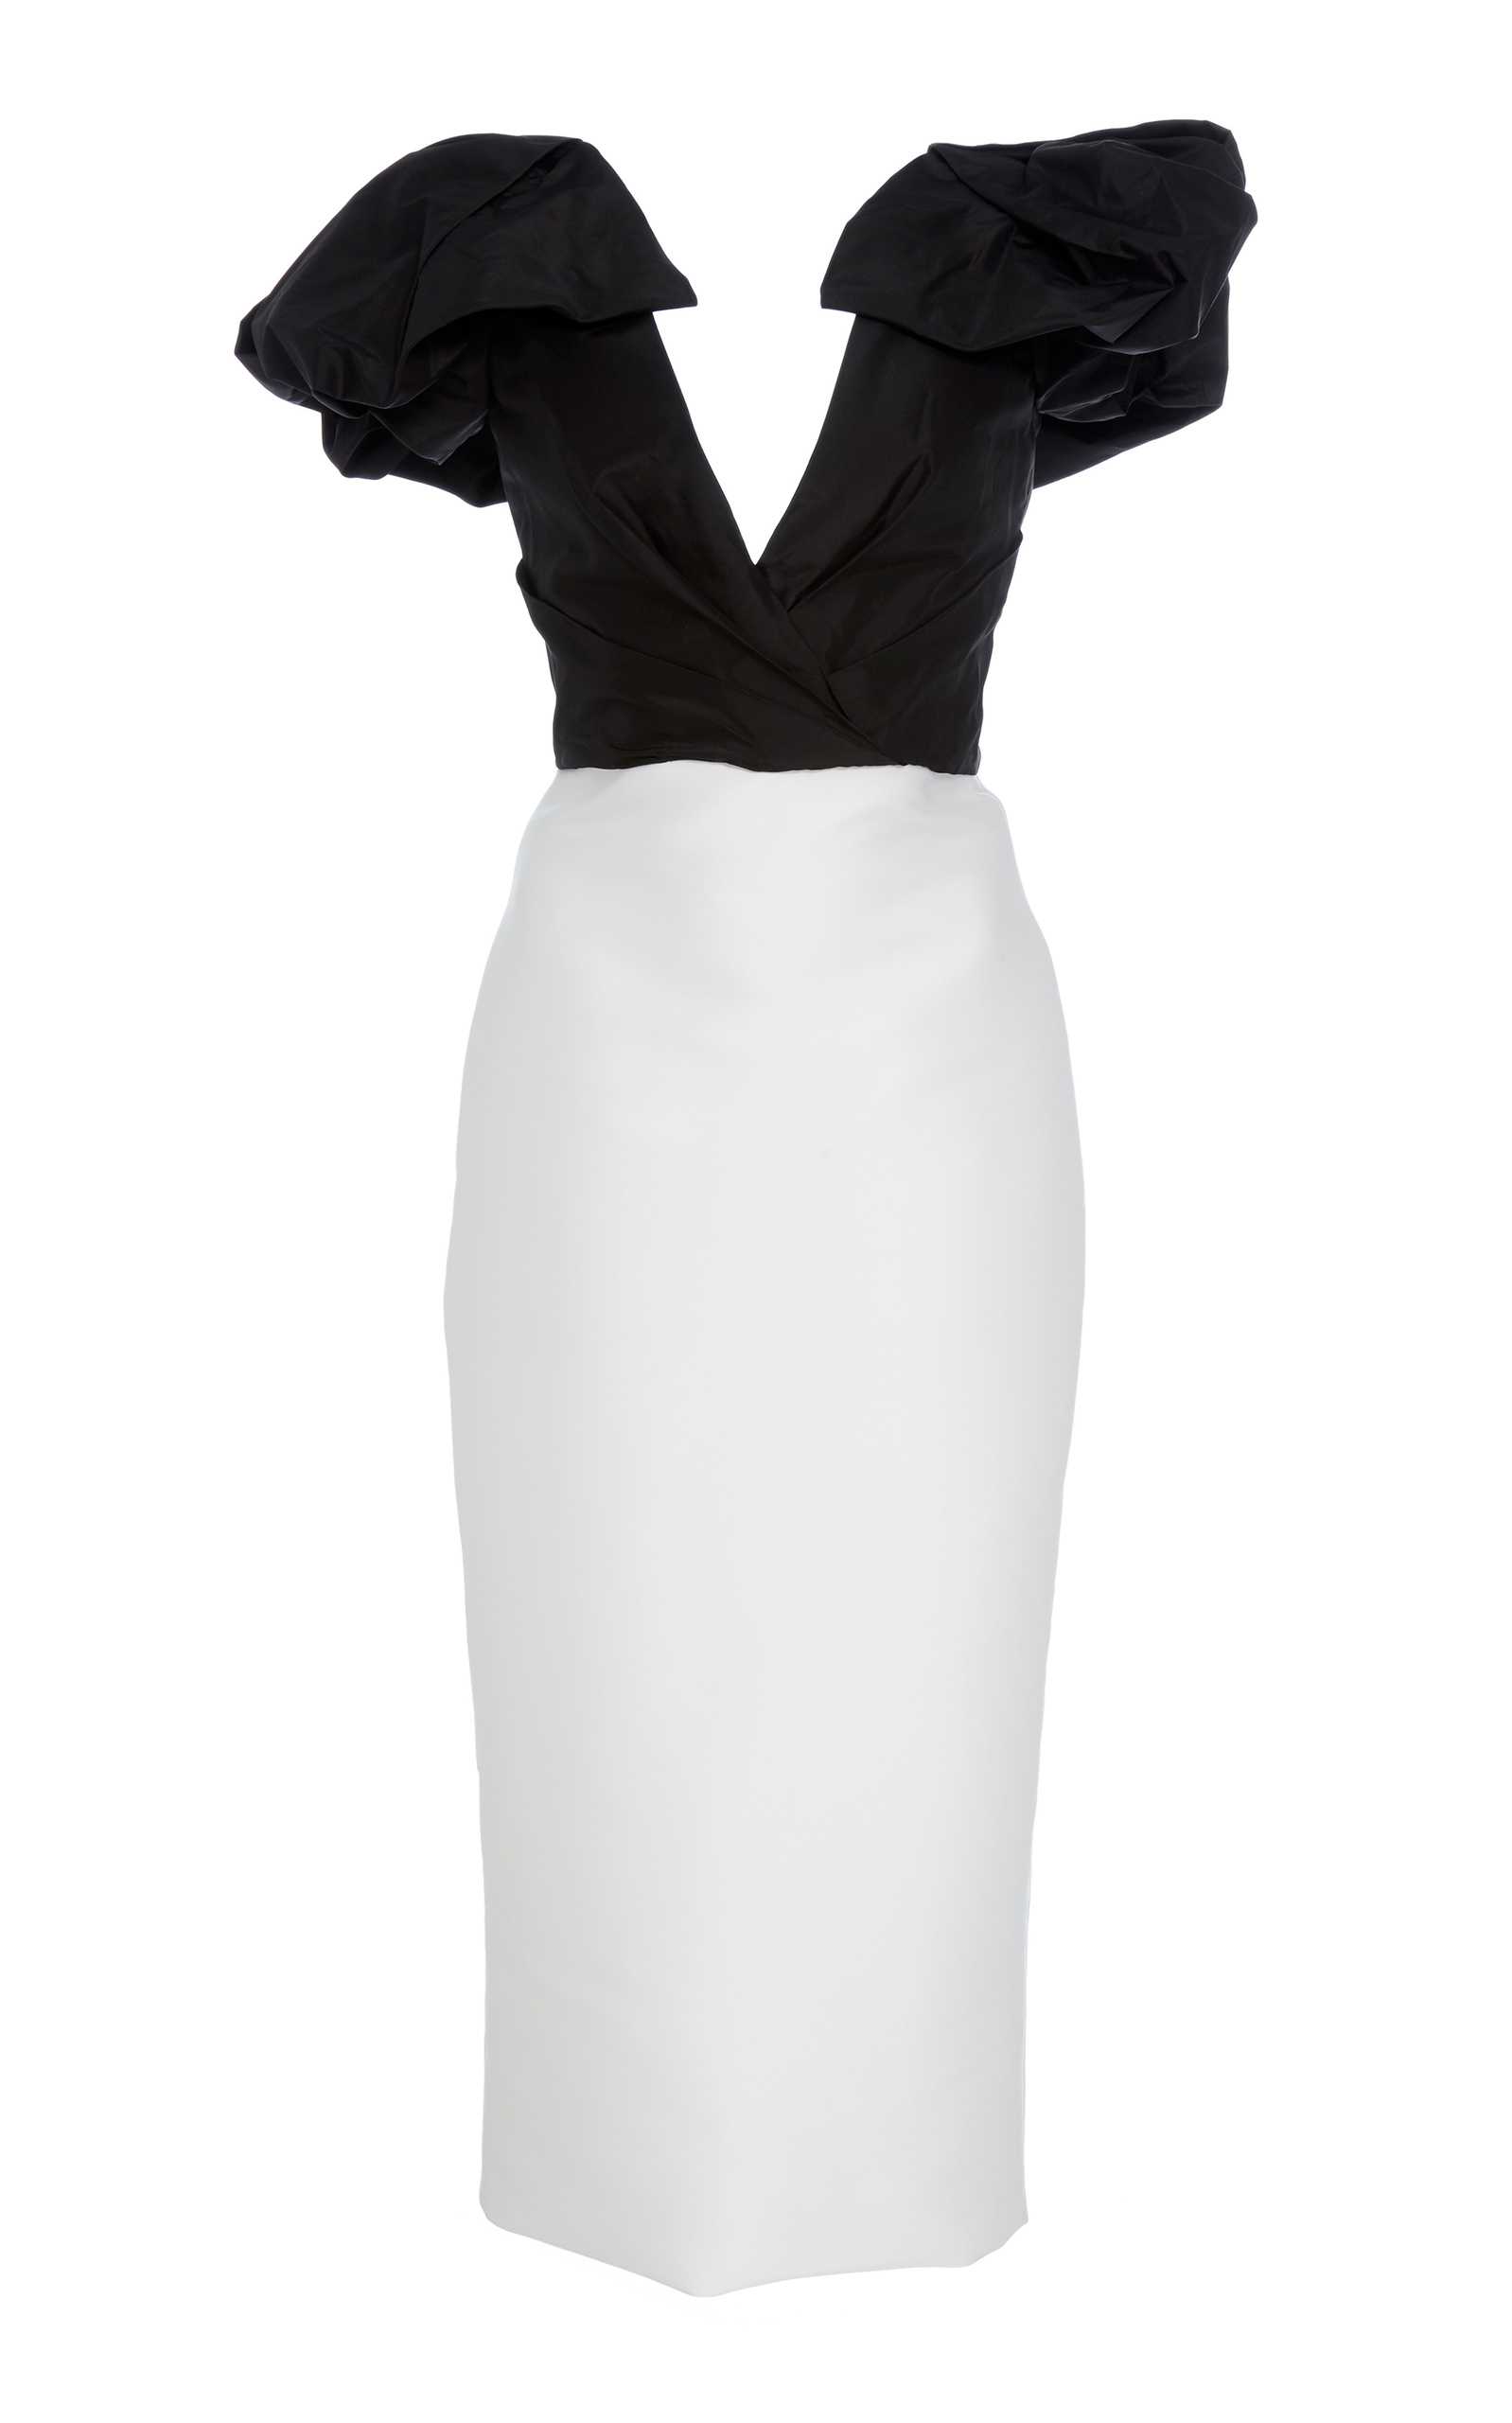 monique lhuillier black and white dress